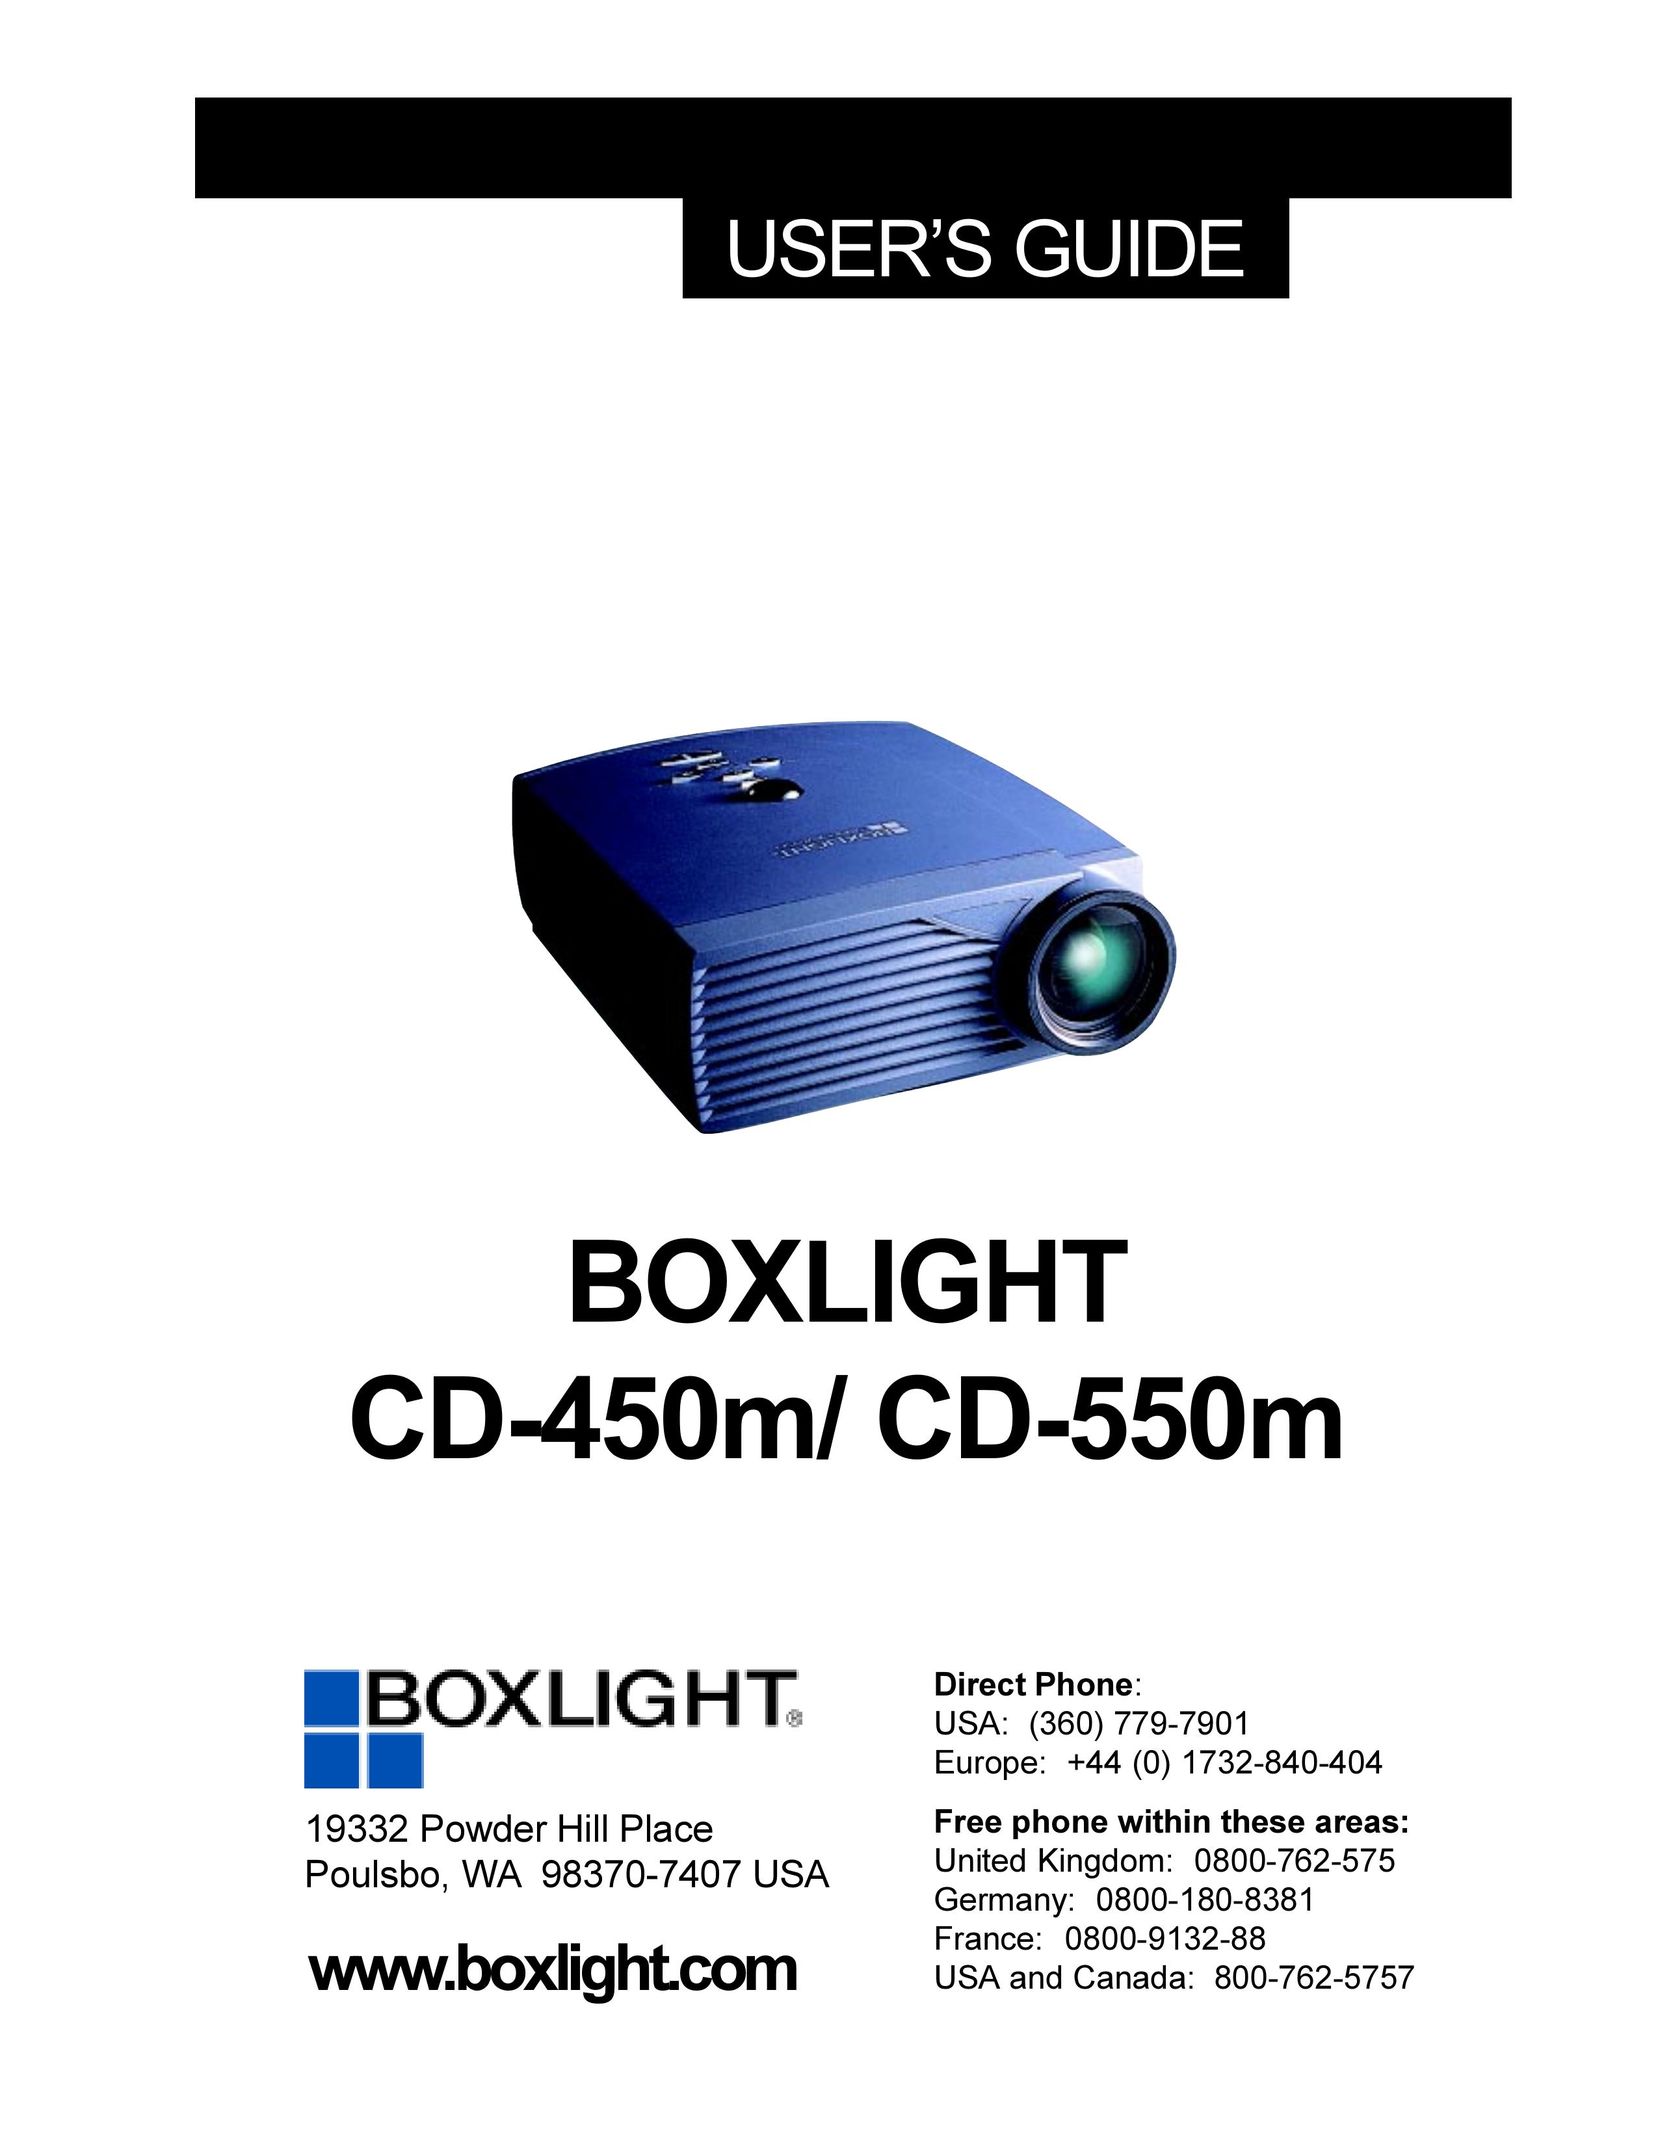 BOXLIGHT CD-550m Projector User Manual